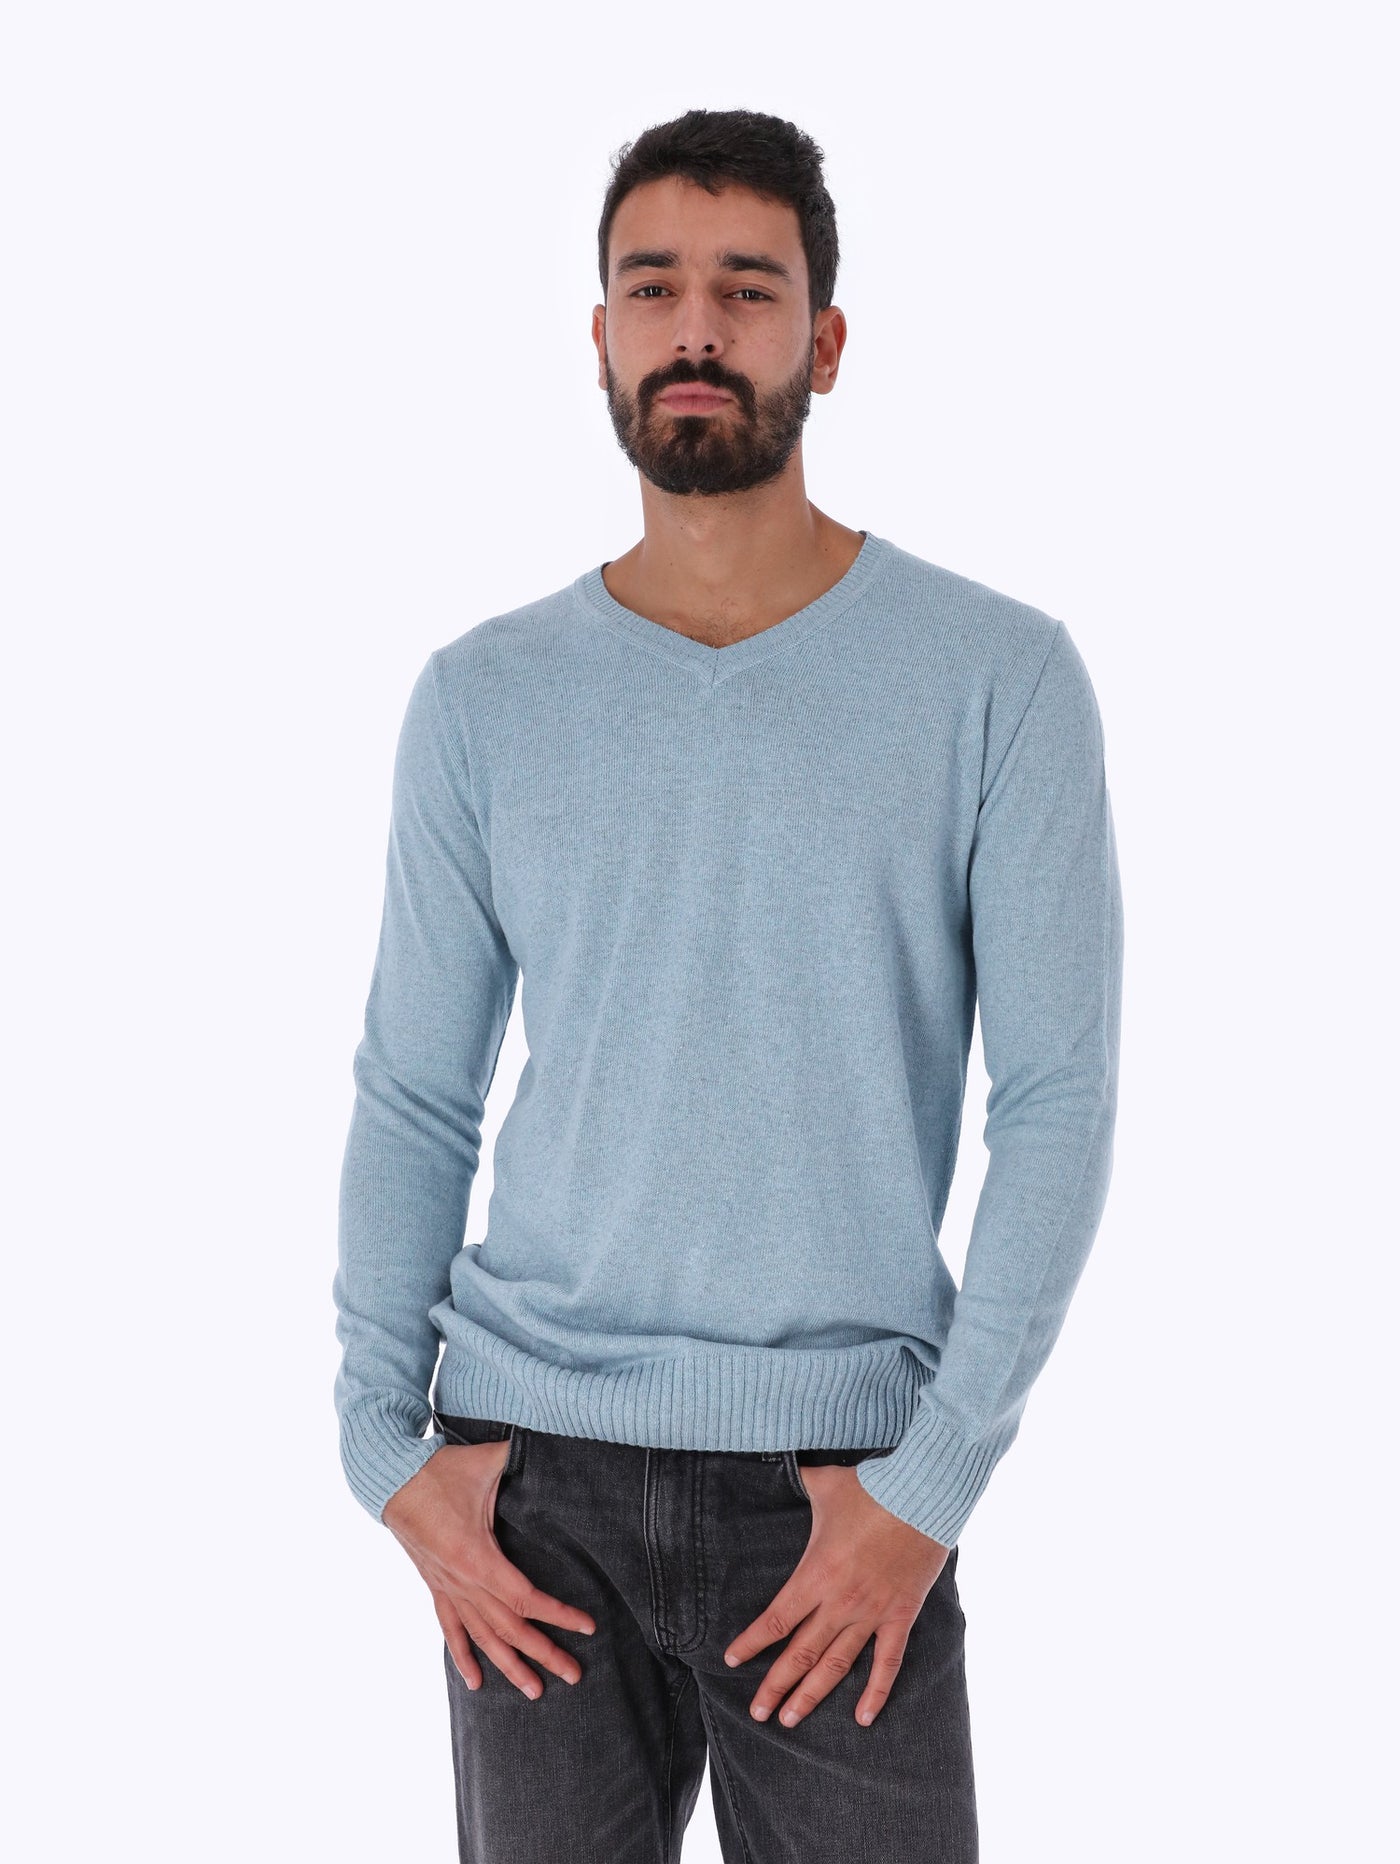 Sweater - V Neck